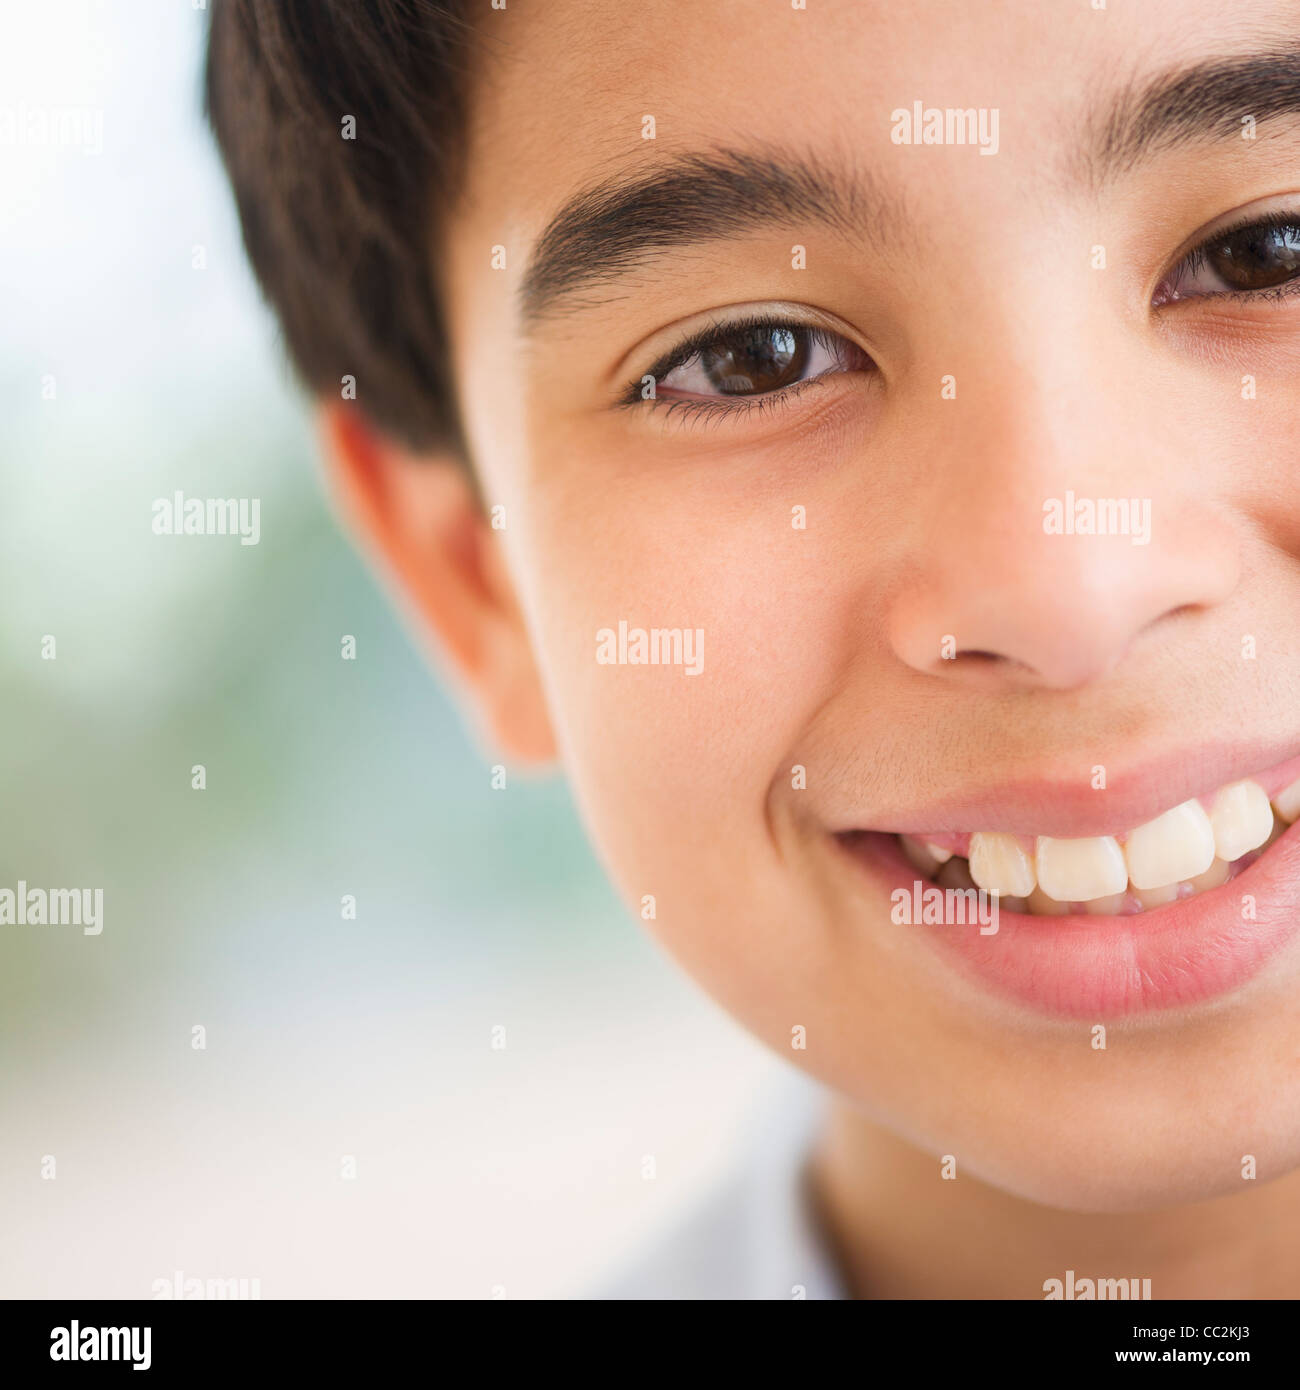 Stati Uniti d'America, New Jersey, Jersey City, ritratto del ragazzo sorridente (12-13) Foto Stock